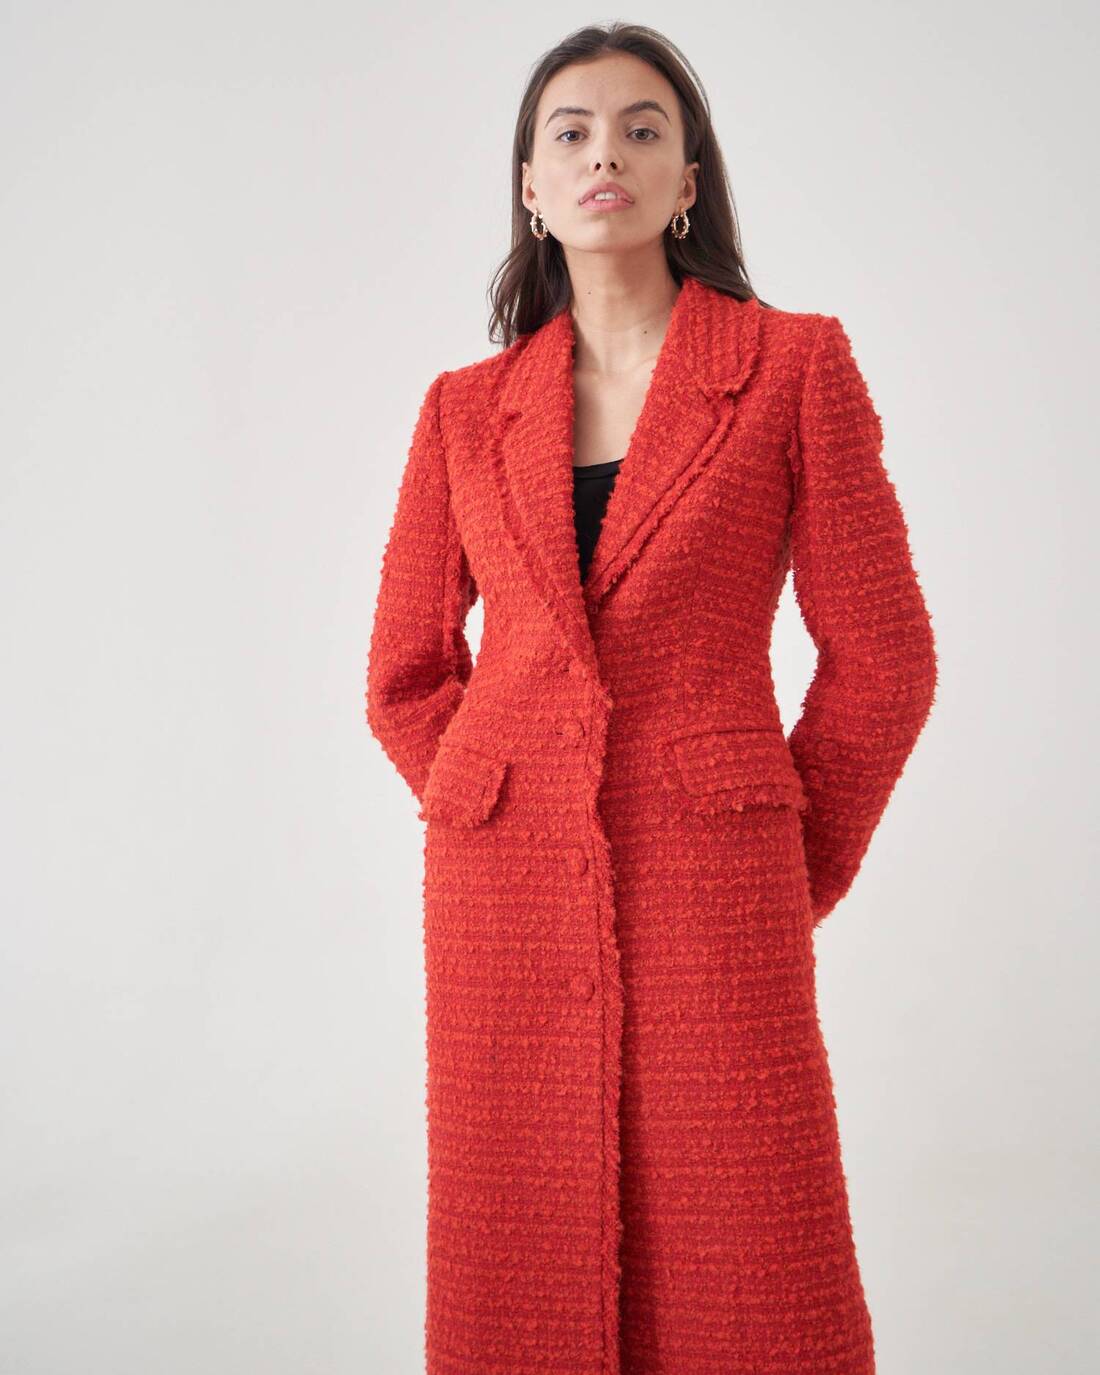 Coat-style tweed boucle jacket